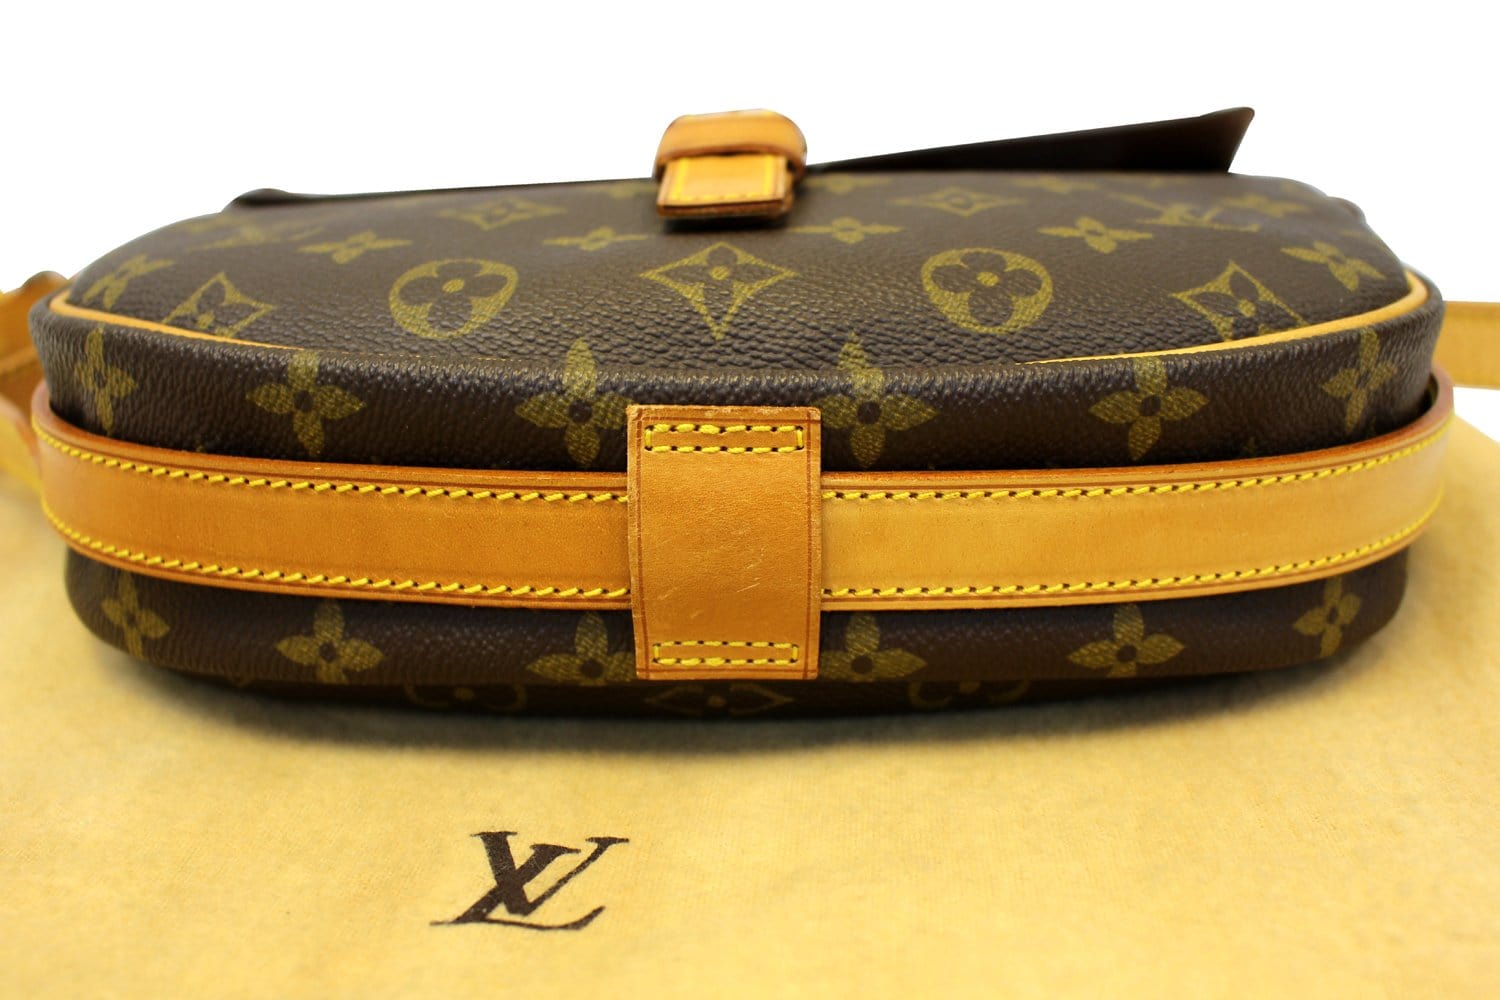 Louis Vuitton Monogram Jeune Fille GM Shoulder Bag Brown - $1089